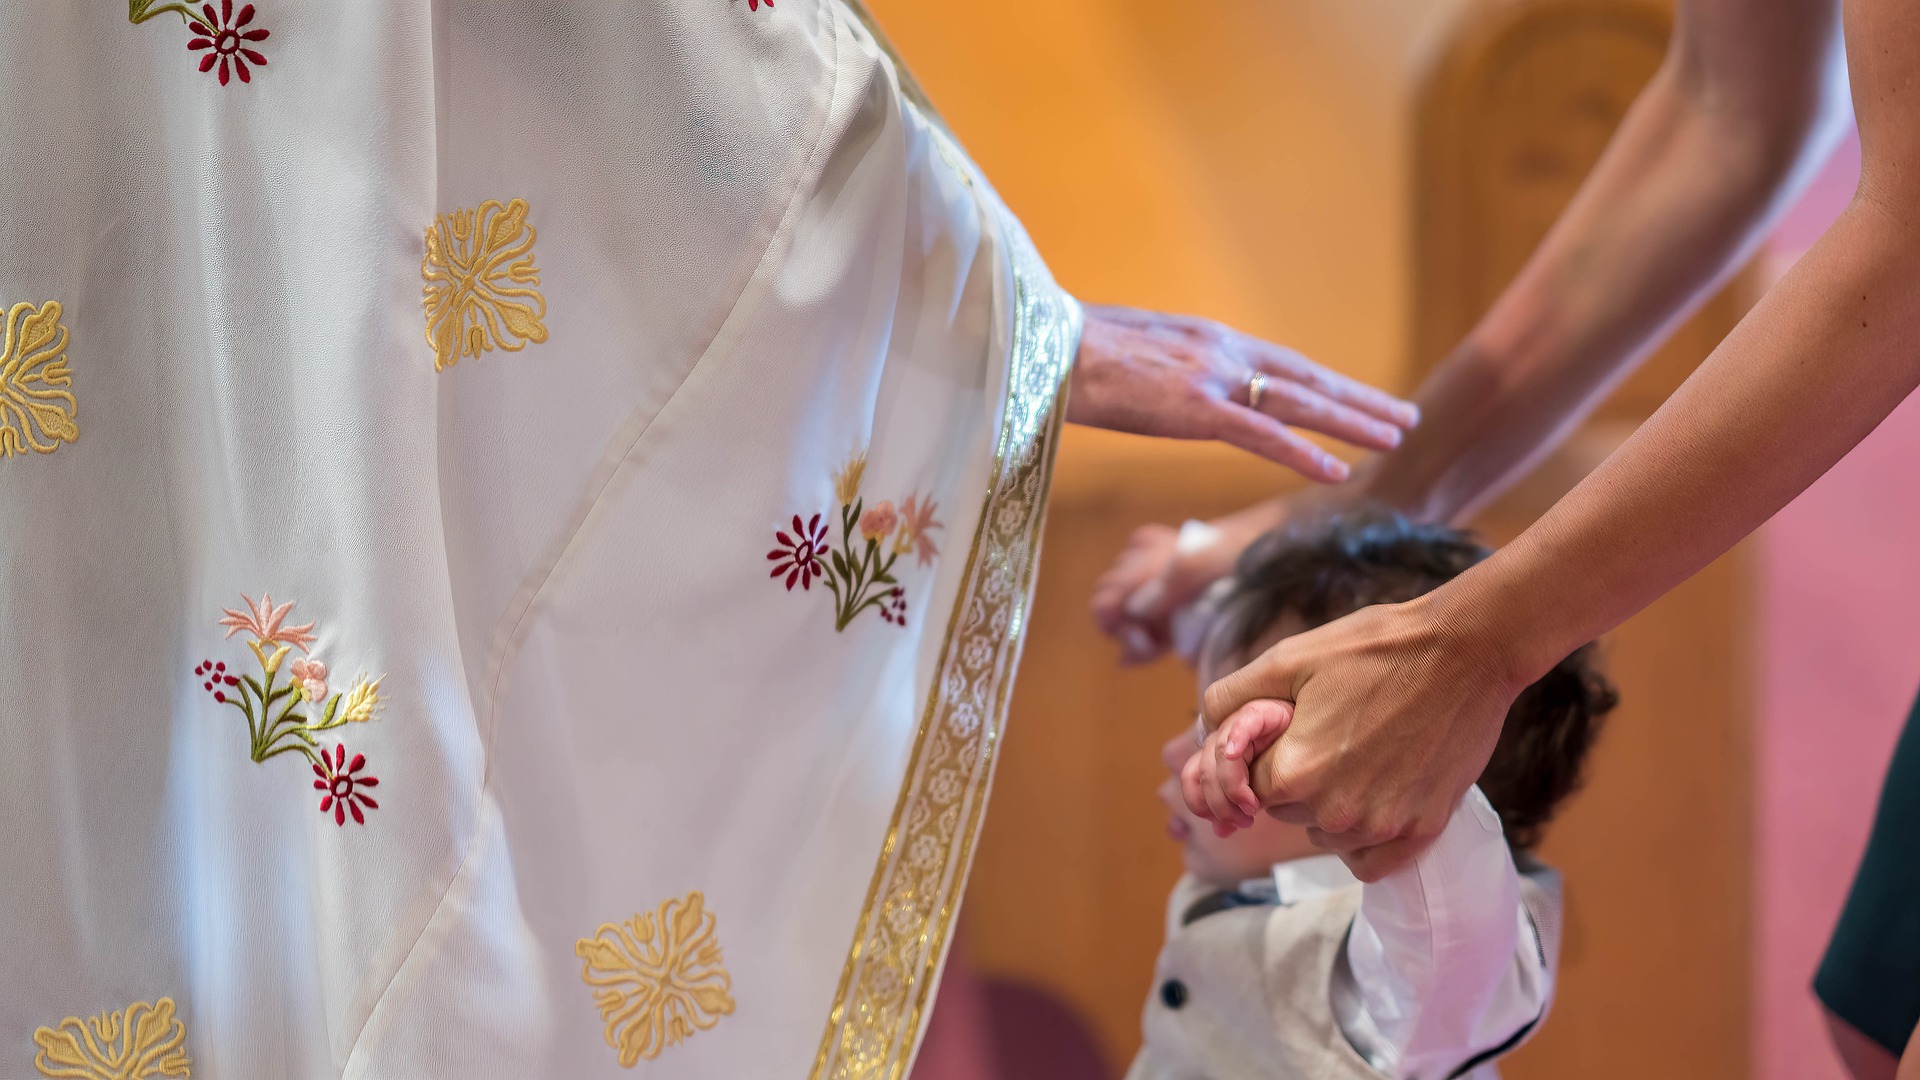 eucharistia-požehnanie-kňaz-kostol-5512052-freepixabay